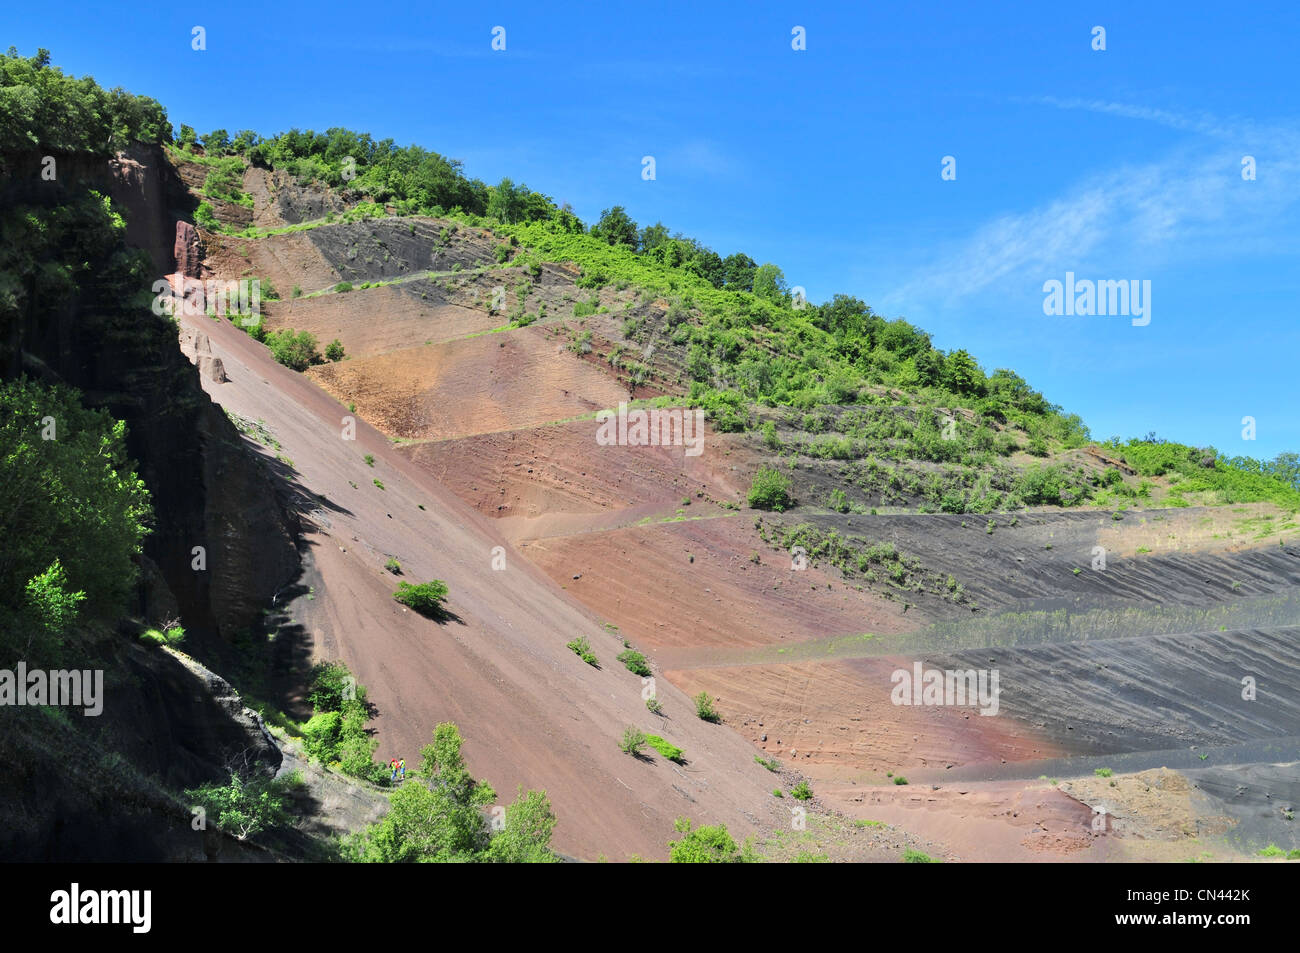 La struttura interna del cono vulcanico esposto grazie per le operazioni di data mining - Garrotxa, Catalogna, Spagna. Foto Stock